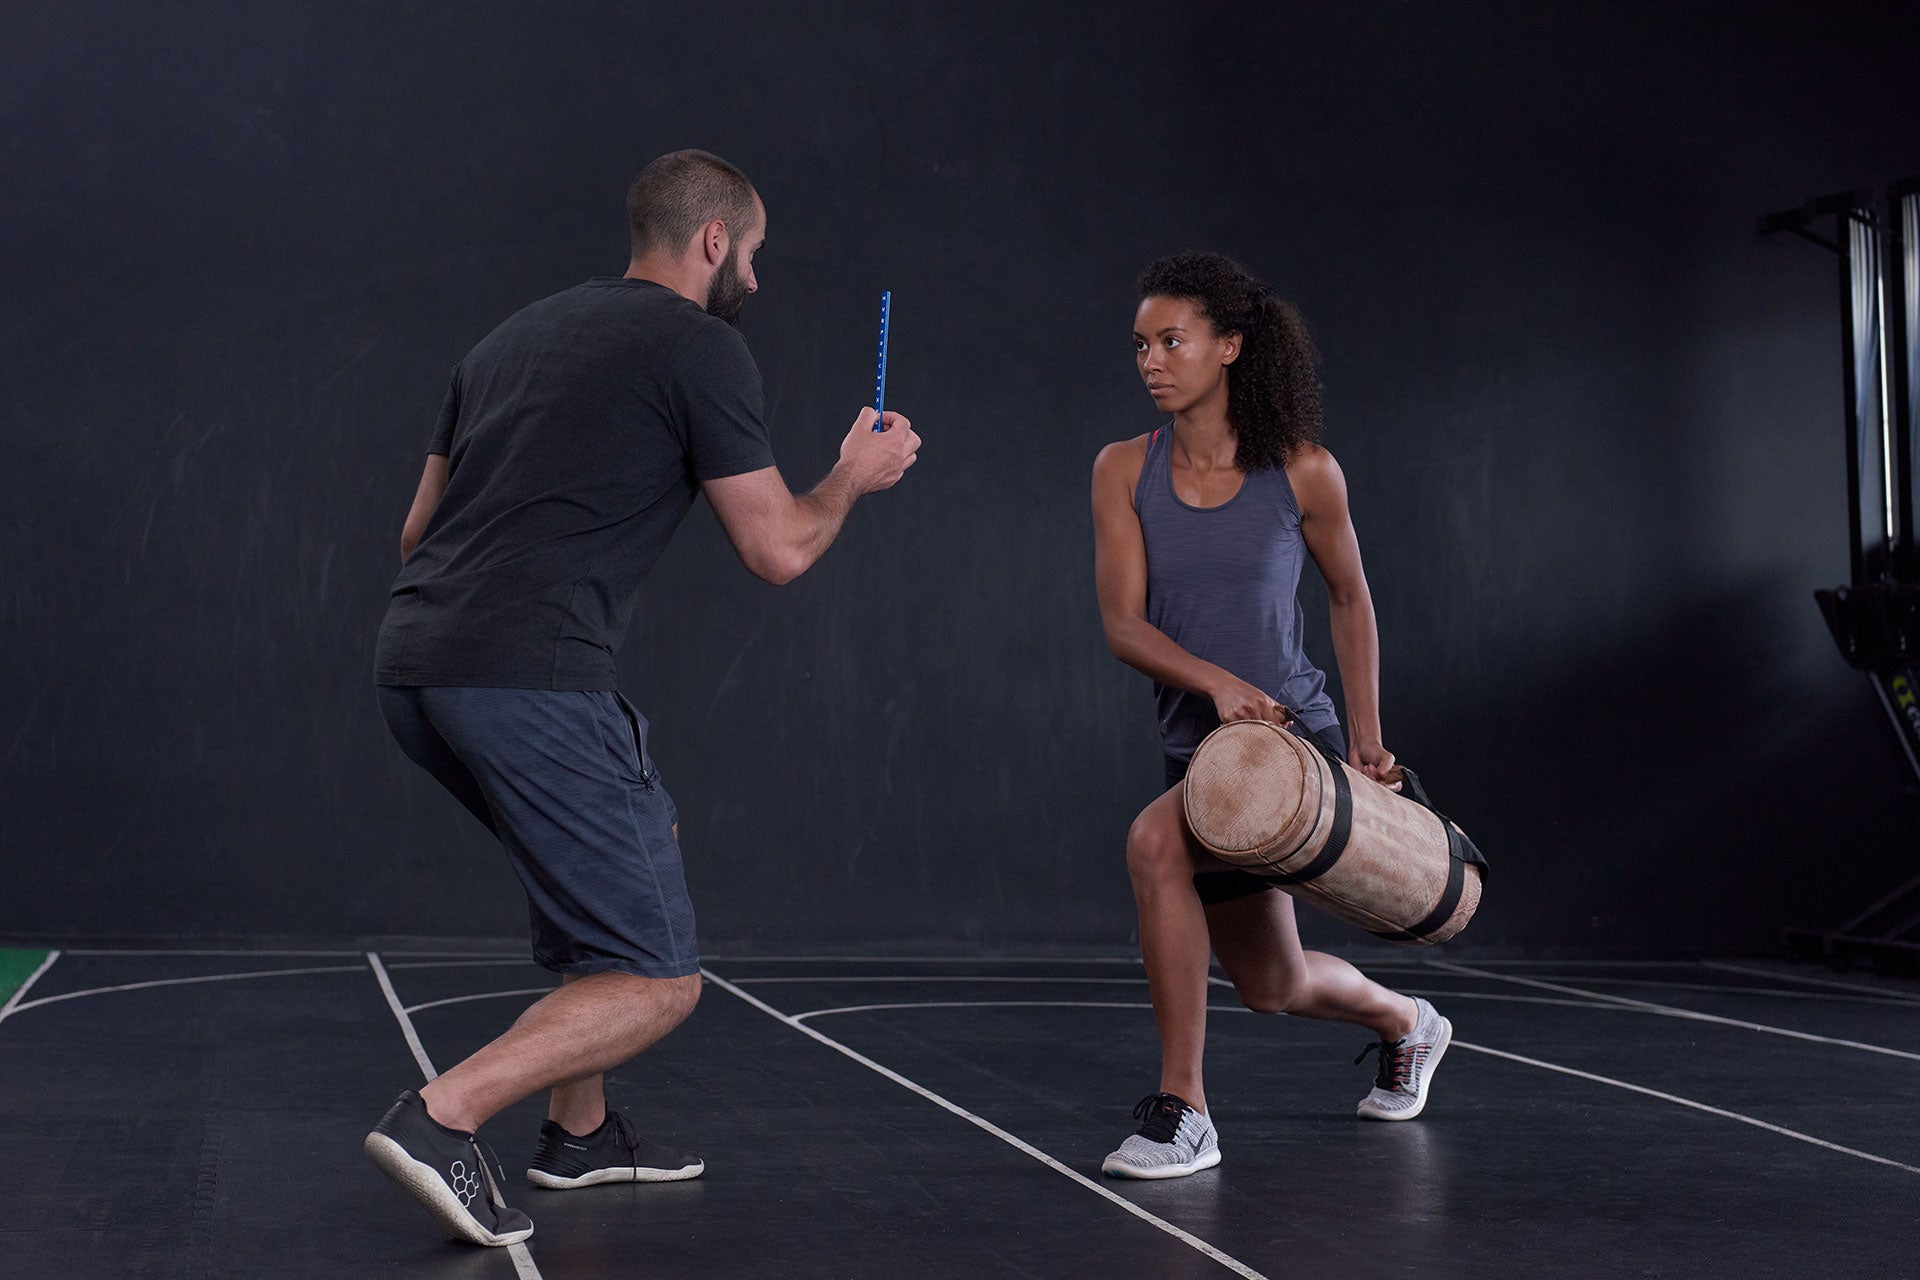 Mann hält einen ARTZT neuro Vision Stick, eine Frau richtet ihren Blick darauf, während sie mit einer Fitnessbag trainiert.